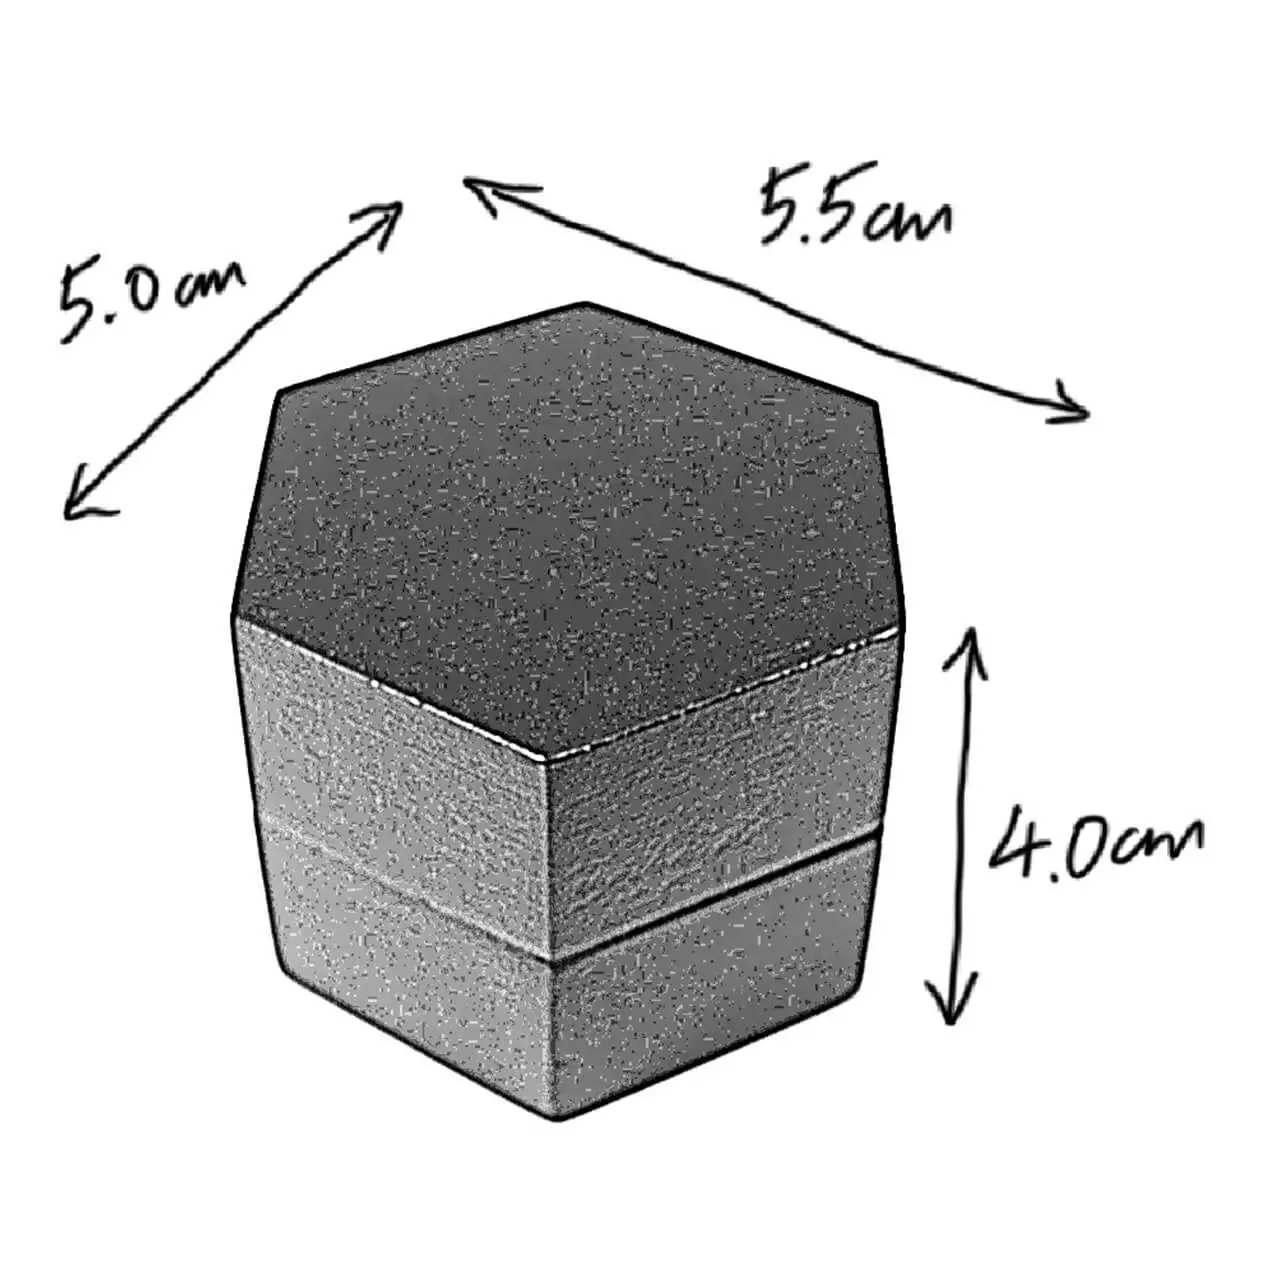 weylyn ring box dimensions